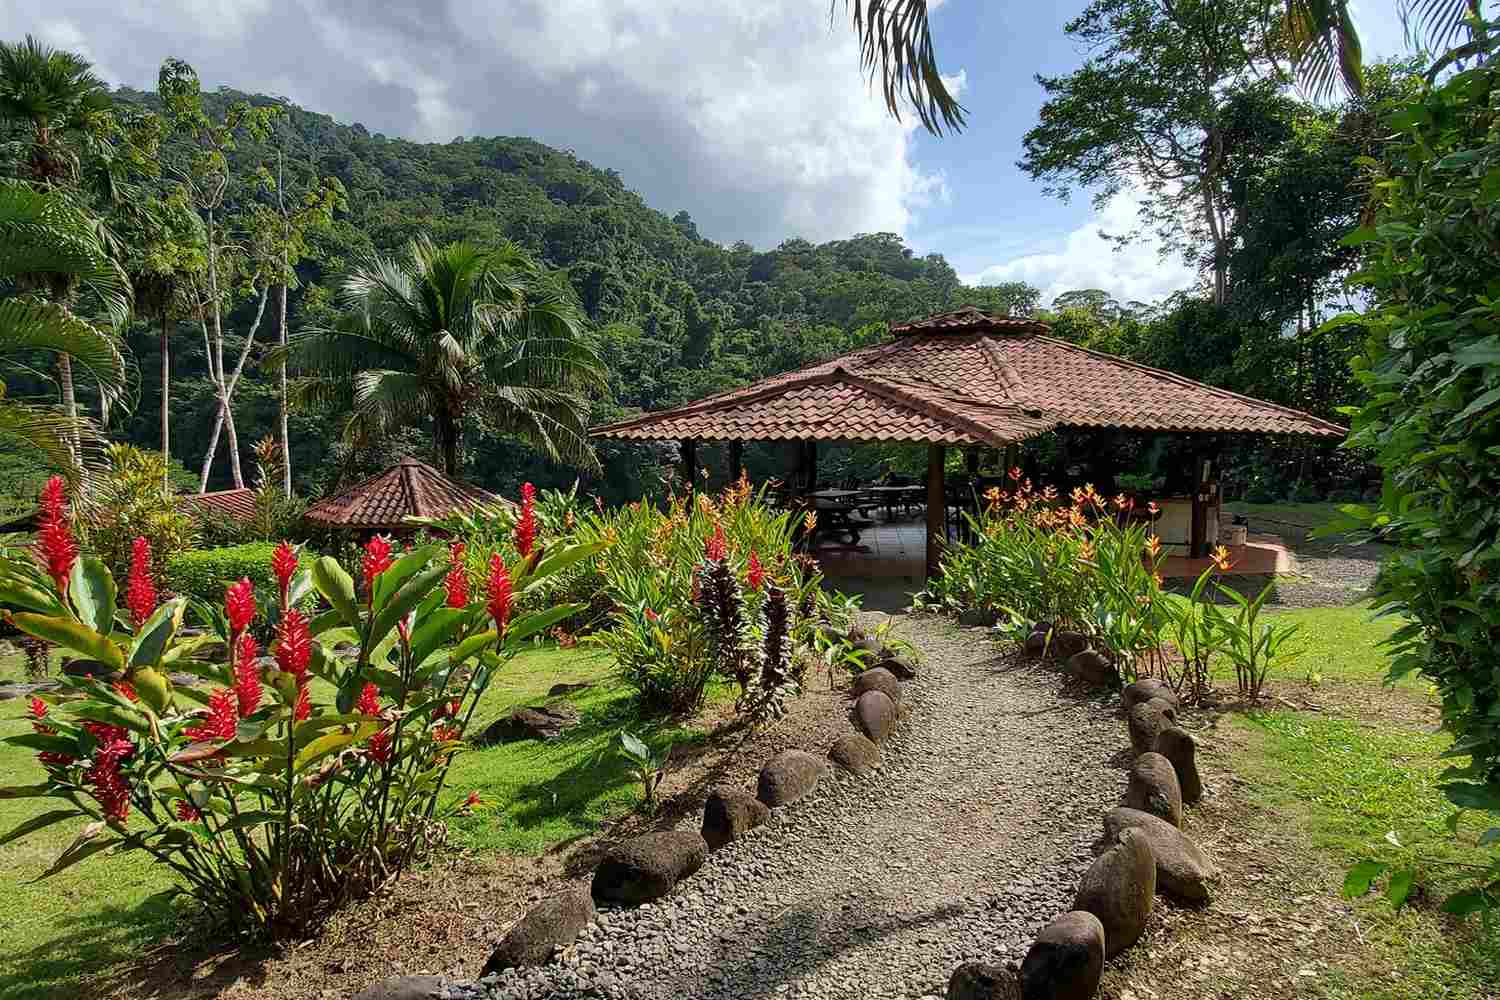 Pacuare River Lodge - Costa Rica